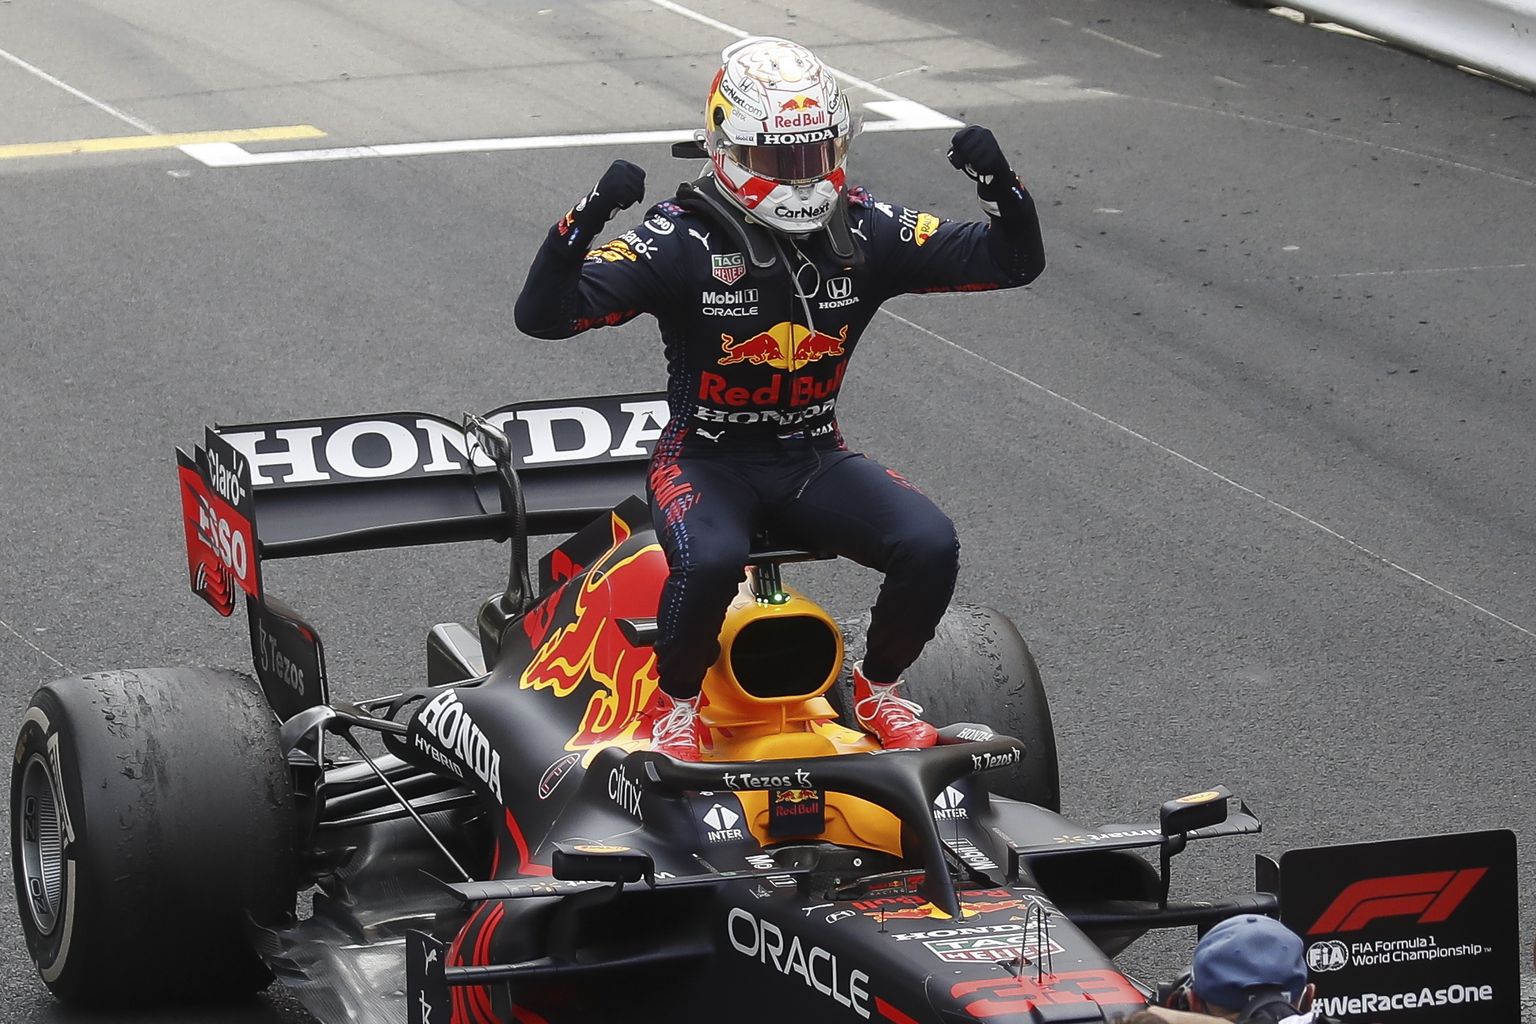 Makss Verstapens pēc uzvaras Monako Grand Prix izcīņā